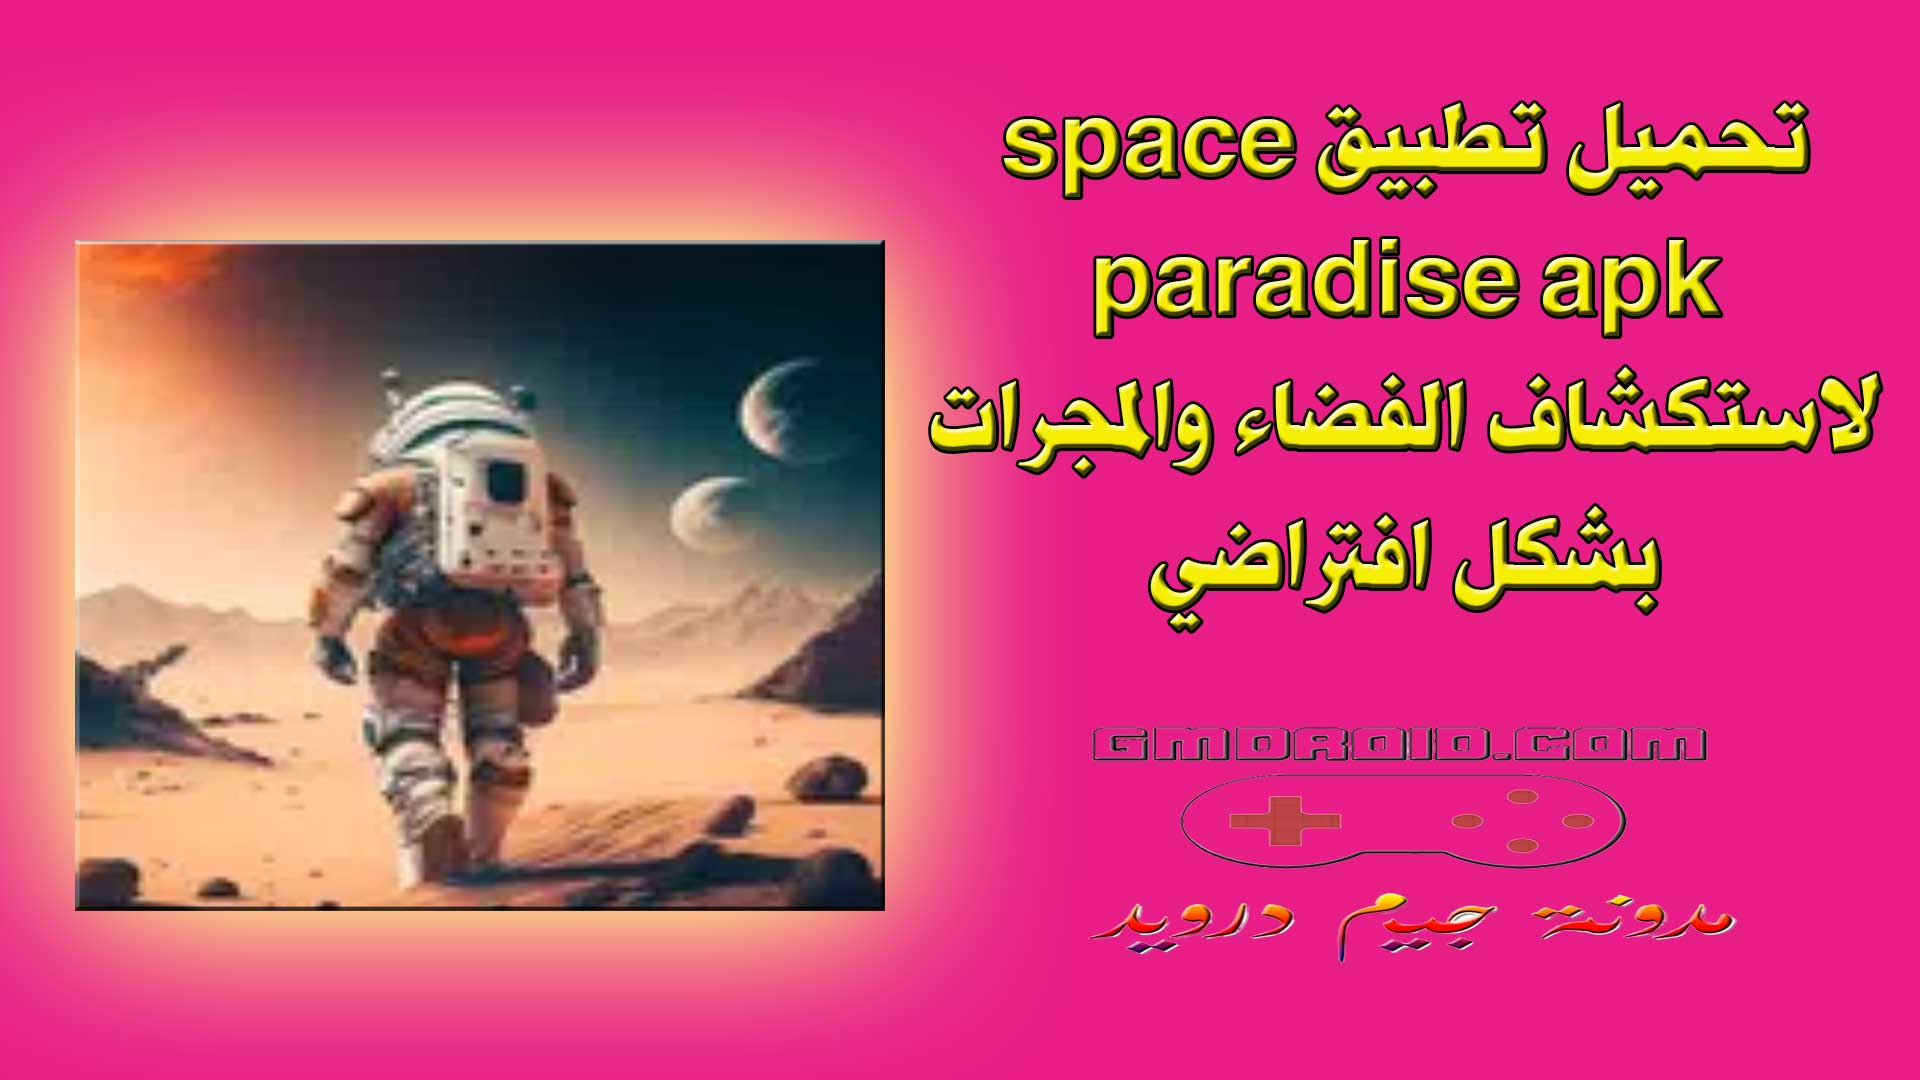 تحميل تطبيق space paradise apk لاستكشاف الفضاء والمجرات بشكل افتراضي